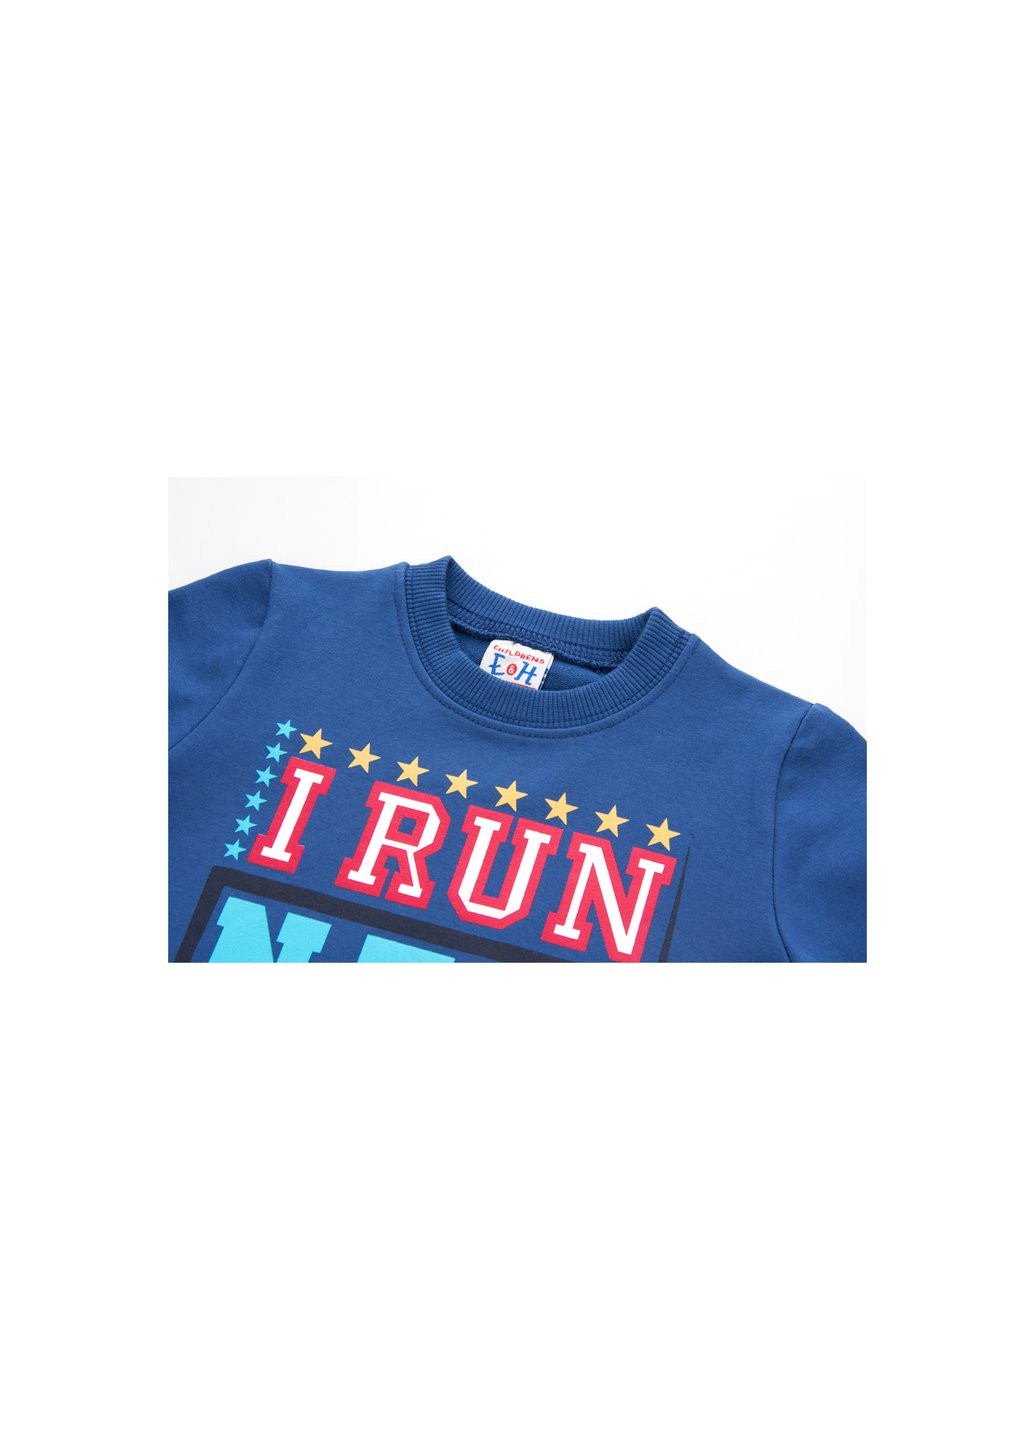 Серый демисезонный набор детской одежды "i run new york" (8278-92b-gray) Breeze